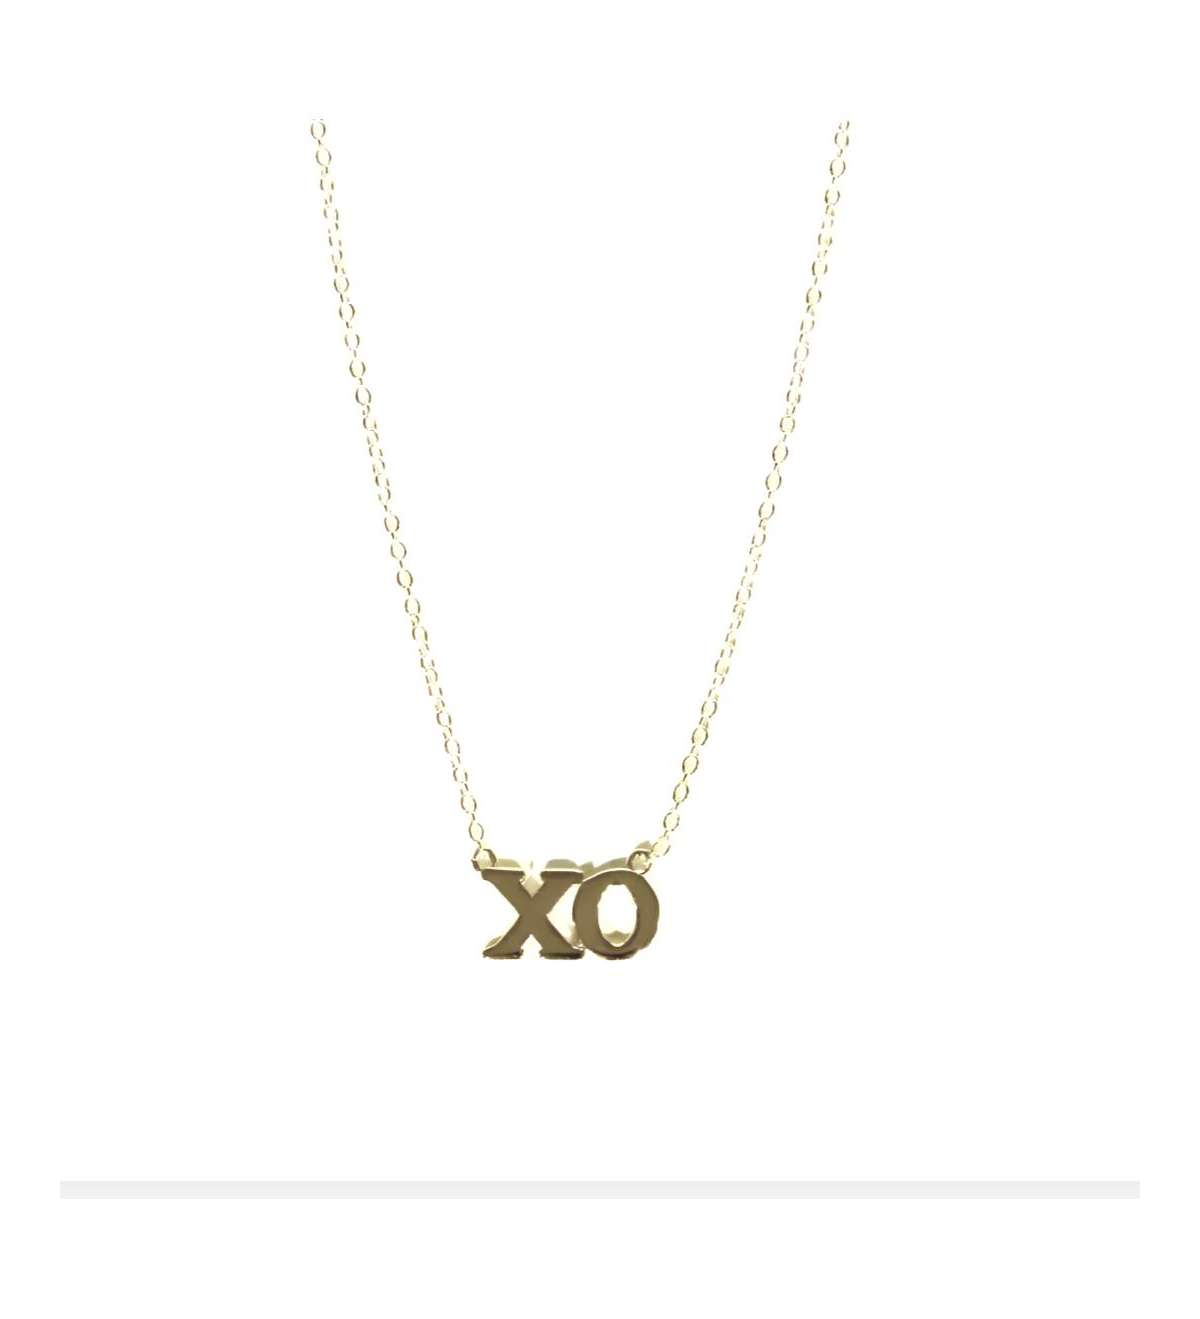 Xo Chain - Gold